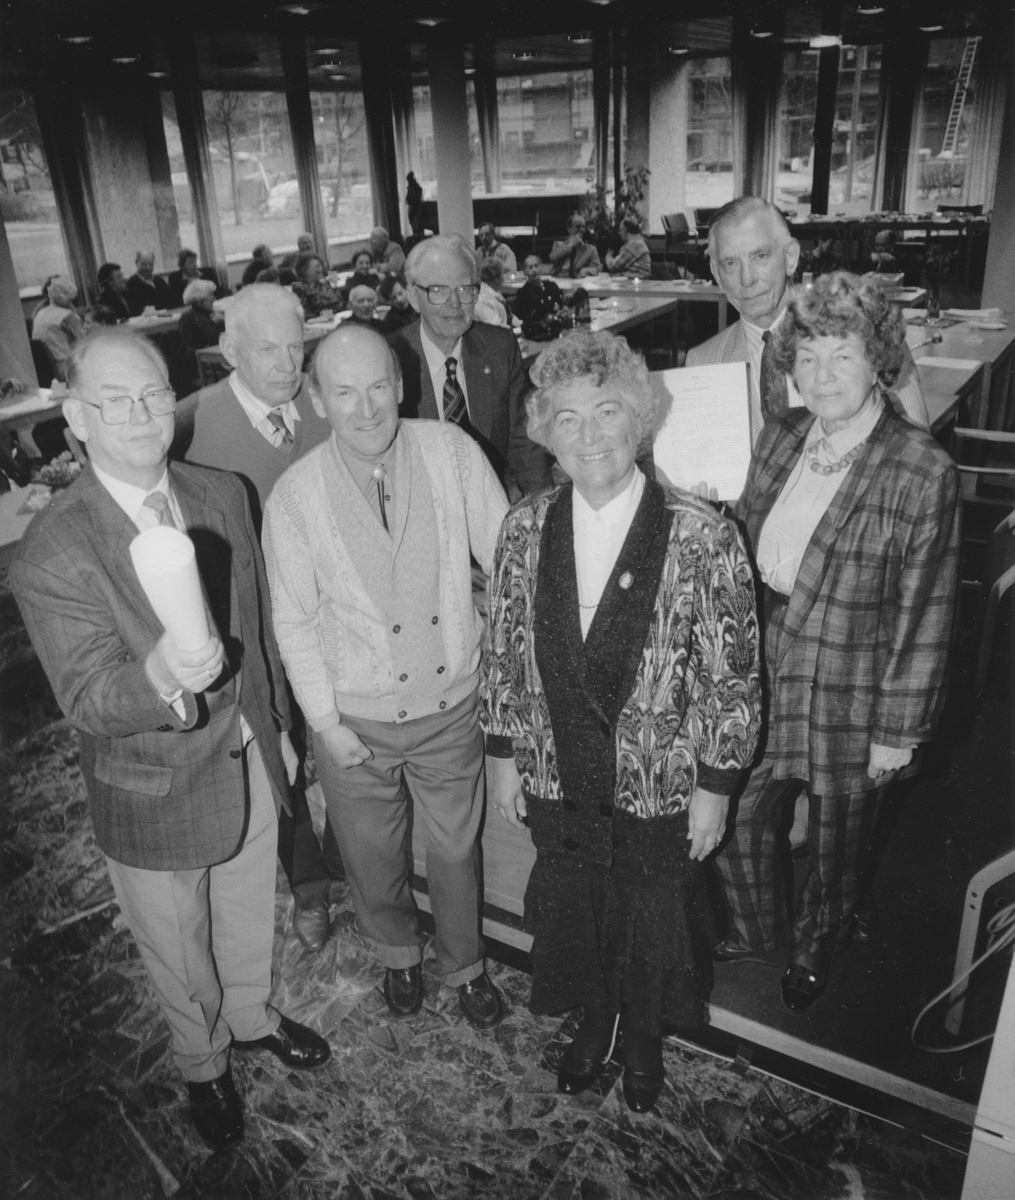 Gruppebilde av politikere fra Oppegård pensjonistparti.
Bak fra venstre: Oddvar Gjølberg, Reidar Sommer Andersen og Olav Henrichsen.
Foran fra venstre: Erik Andresen, Inger Andresen og Astri Bjørhei.